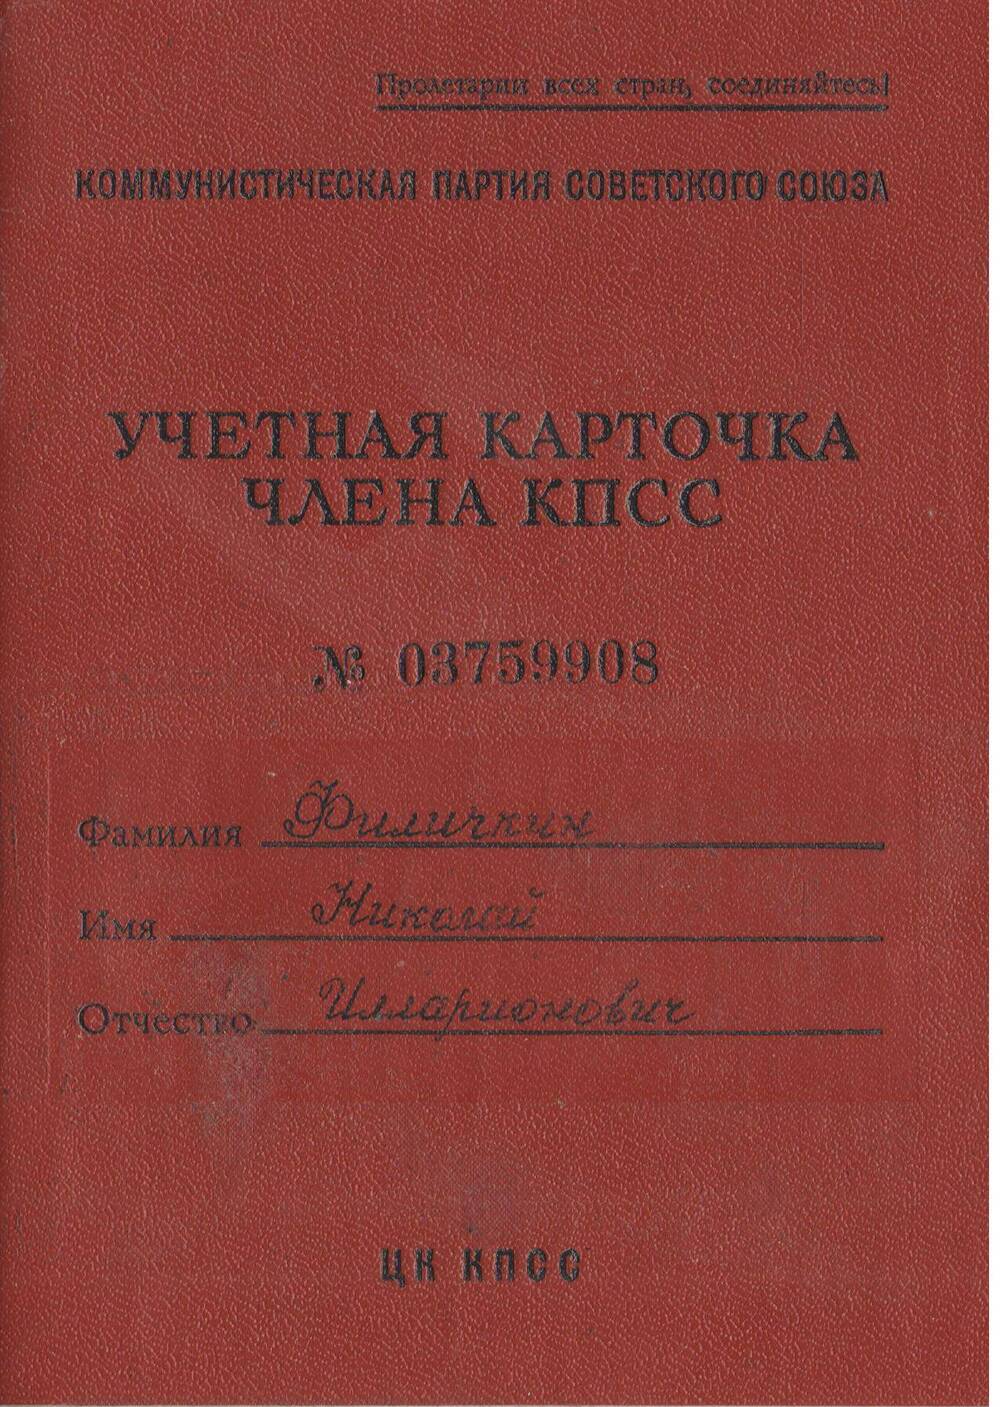 Учетная карточка члена КПСС № 03759908 Филичкина Николая Илларионовича